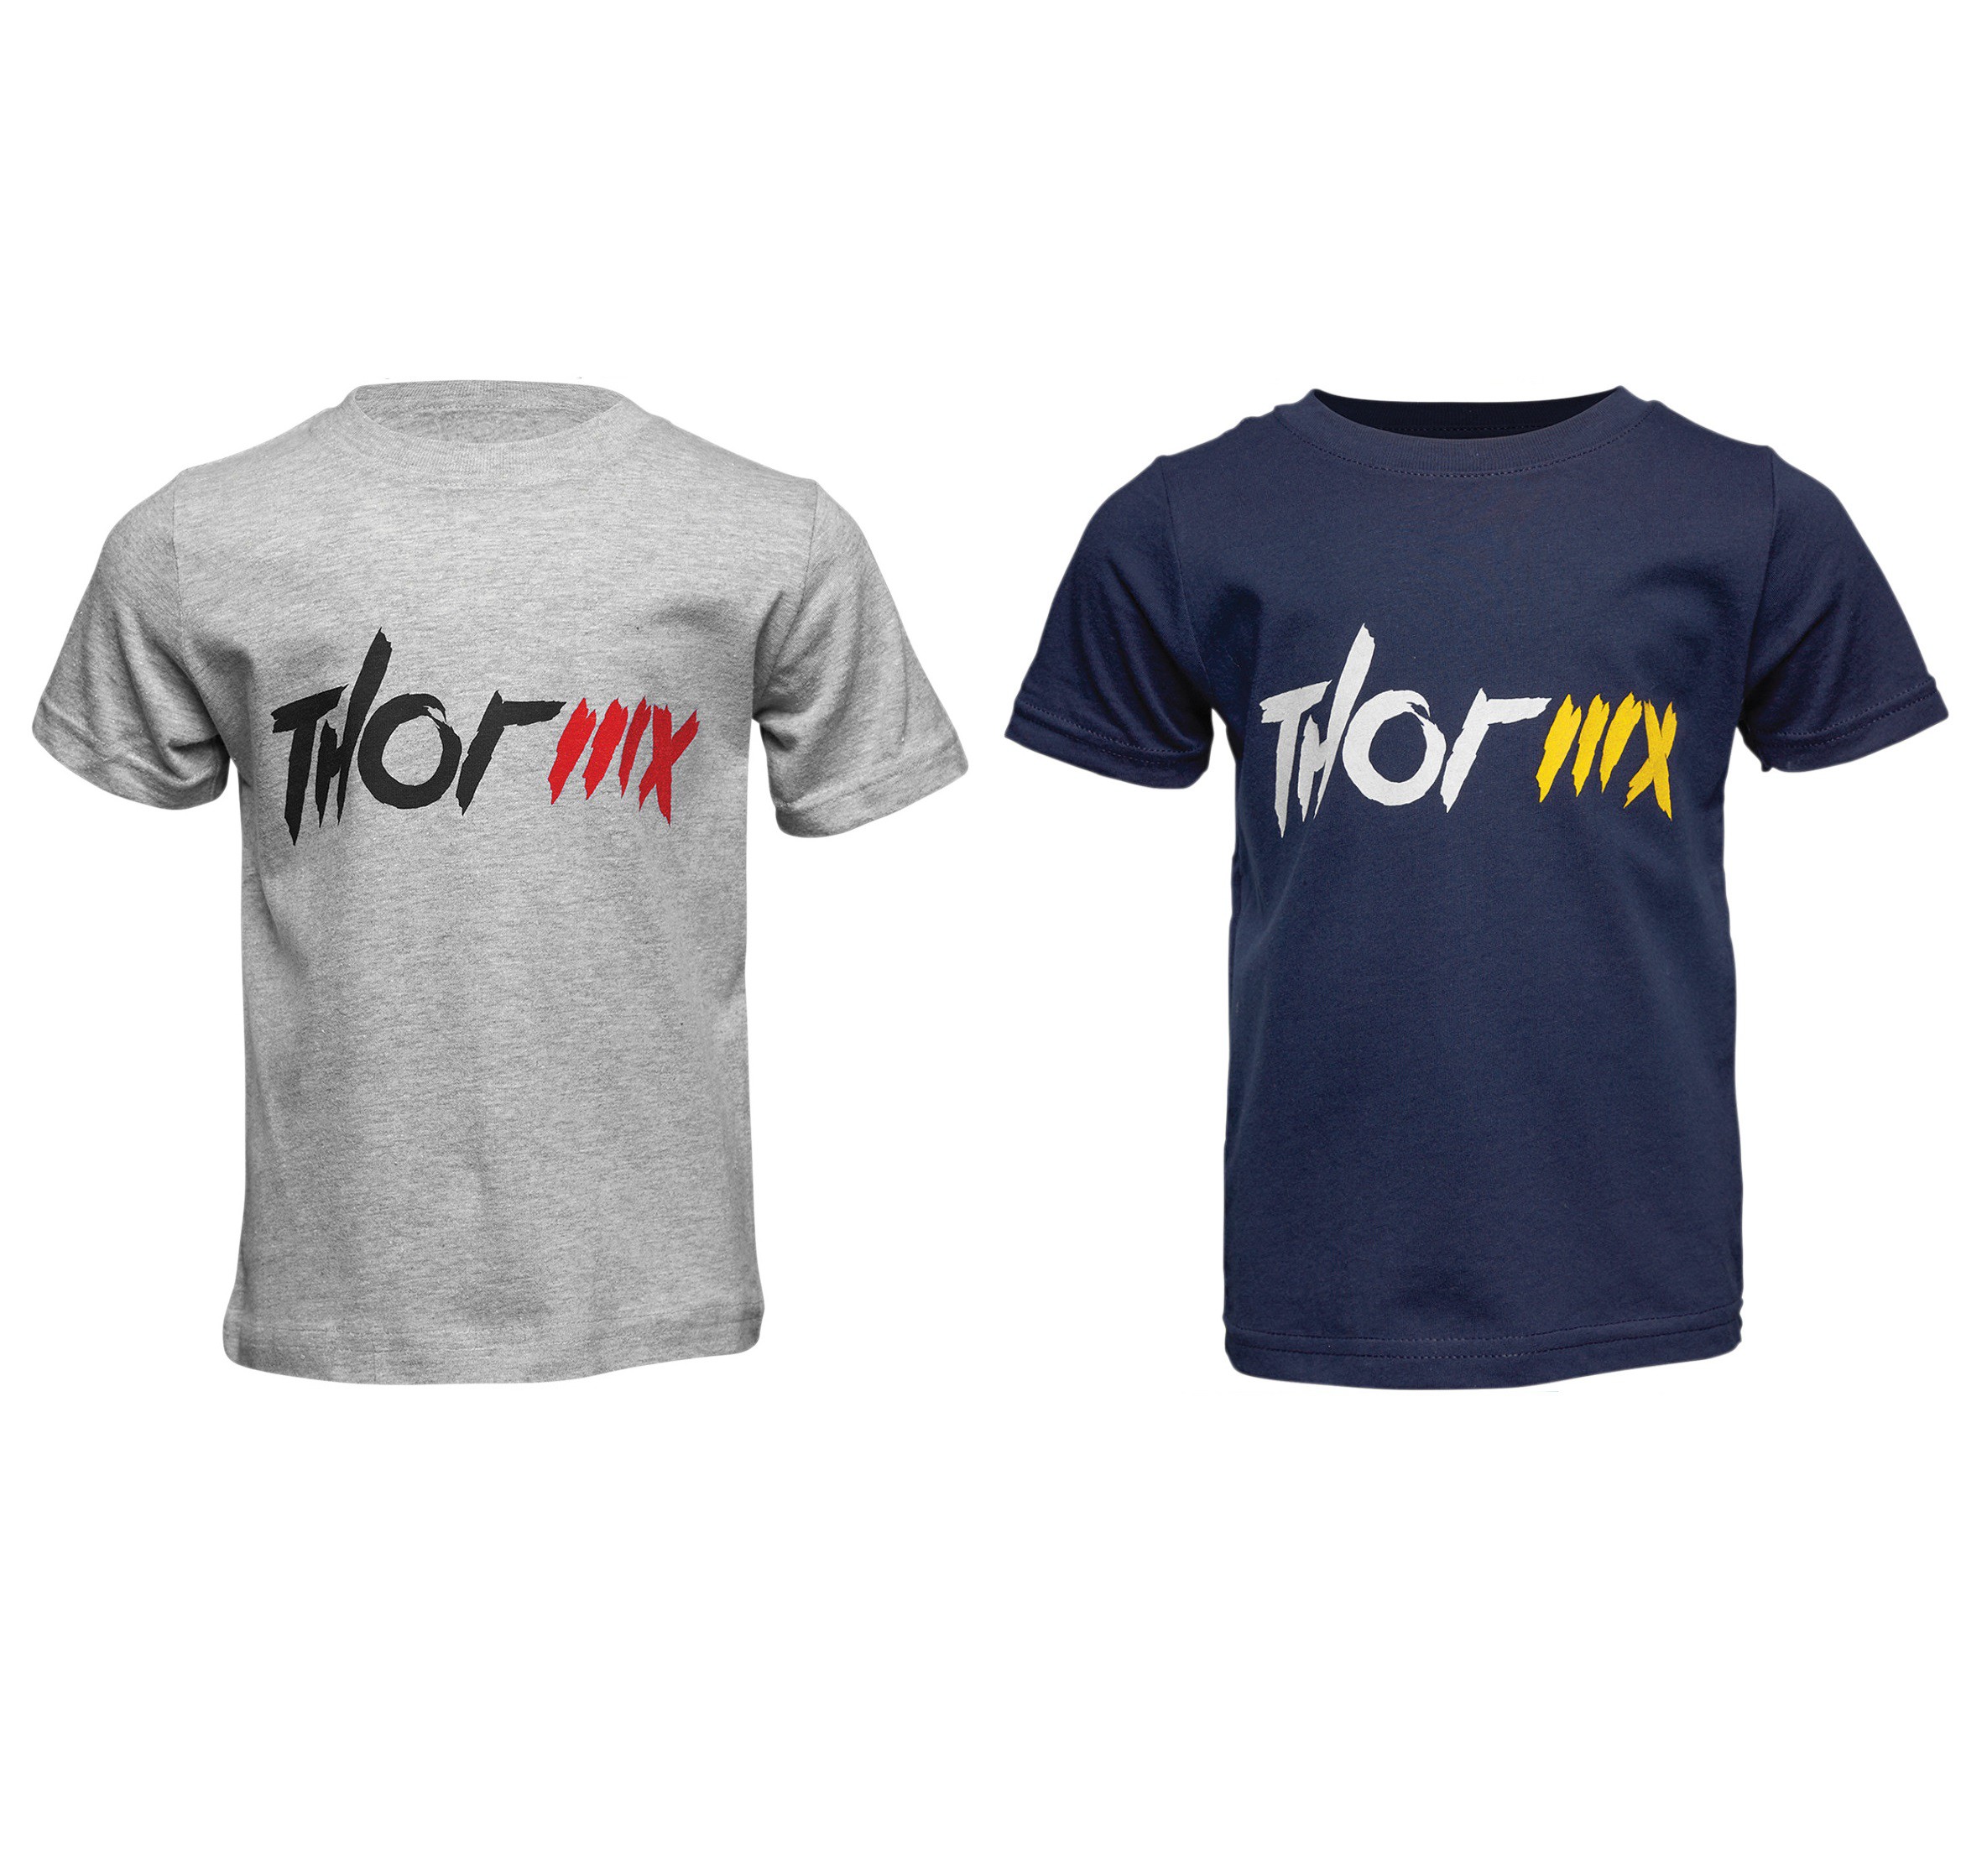 T-Shirt Enfant THOR MX 2021 (2 à 4 ans)